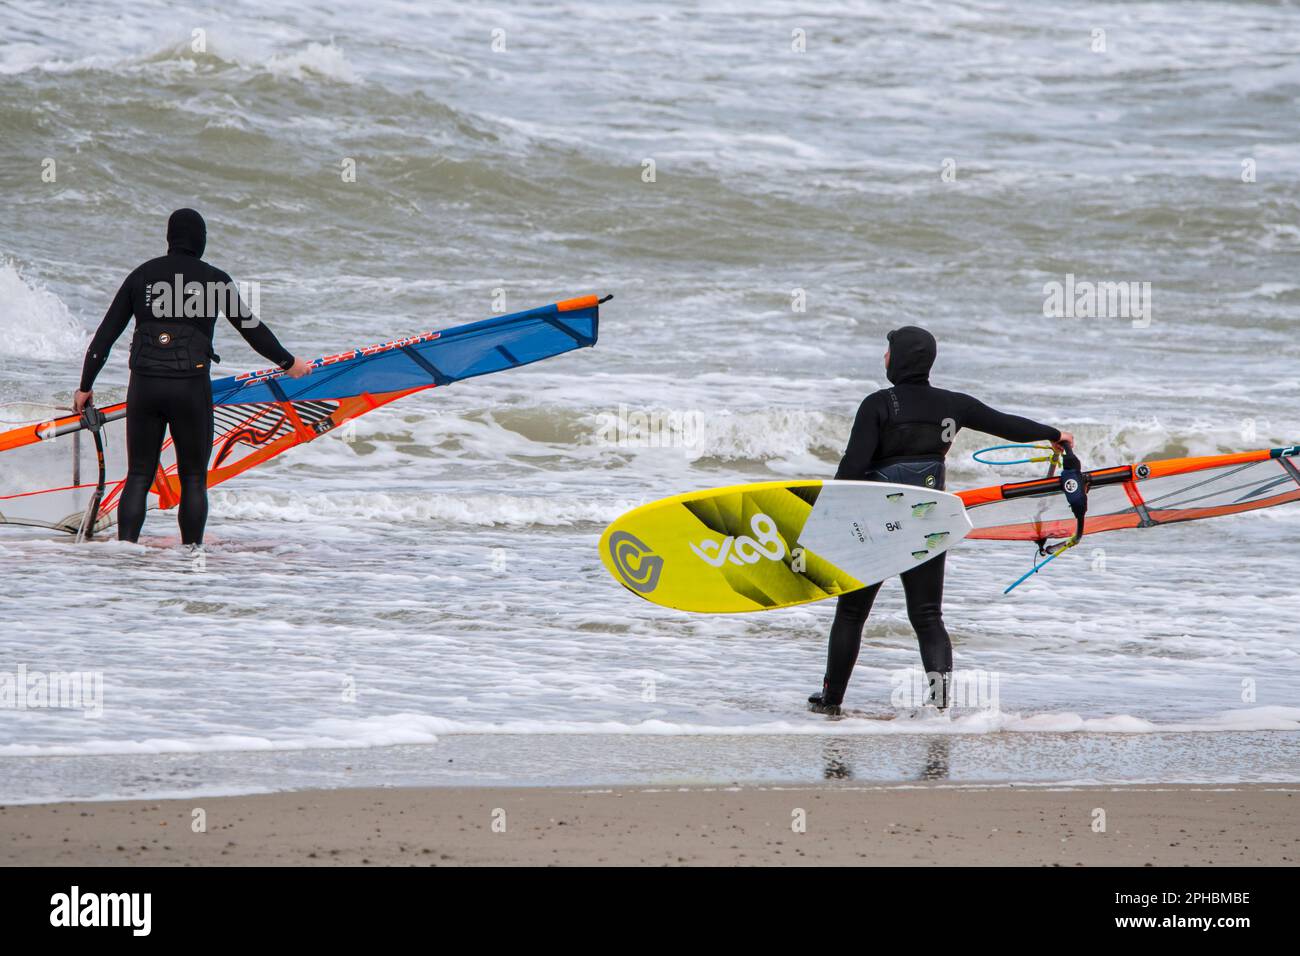 Due windsurf in mute nere che entrano in acqua per praticare il windsurf classico lungo la costa del Mare del Nord in condizioni di vento durante la tempesta invernale Foto Stock